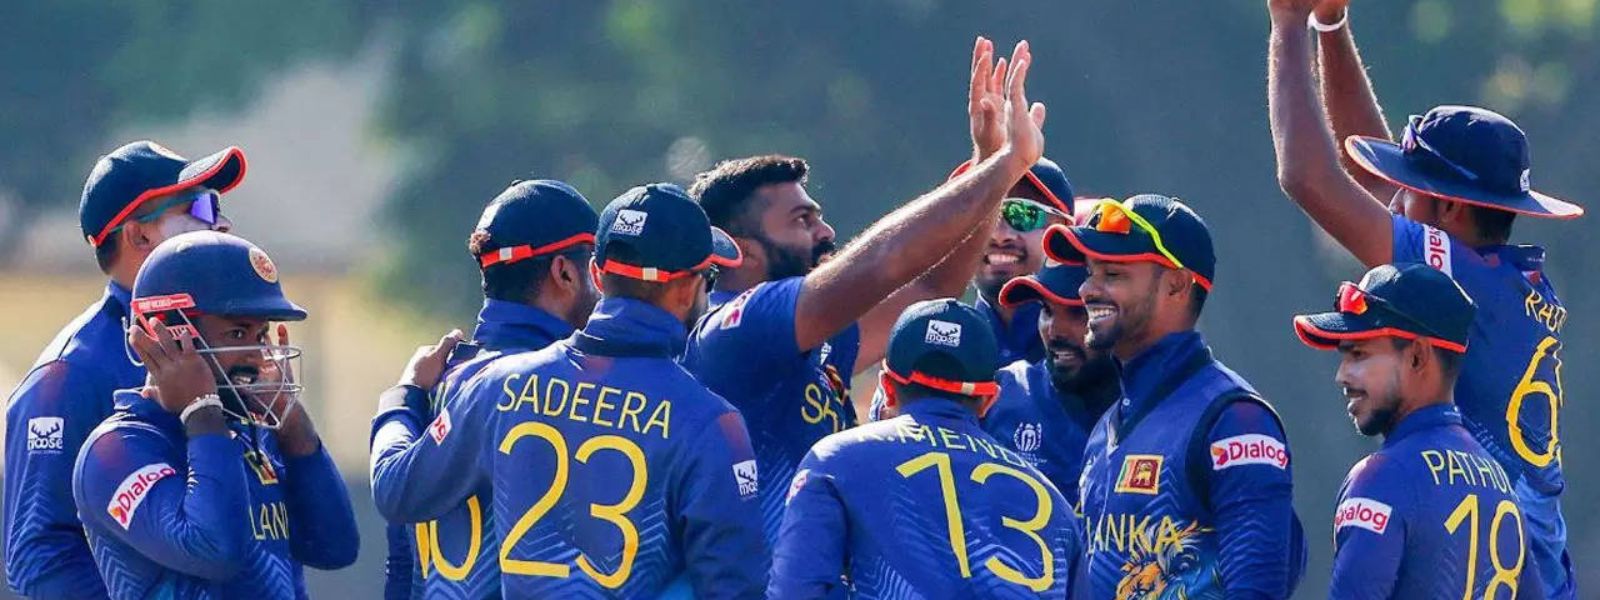 Will India halt Sri Lanka's 13-match win streak?